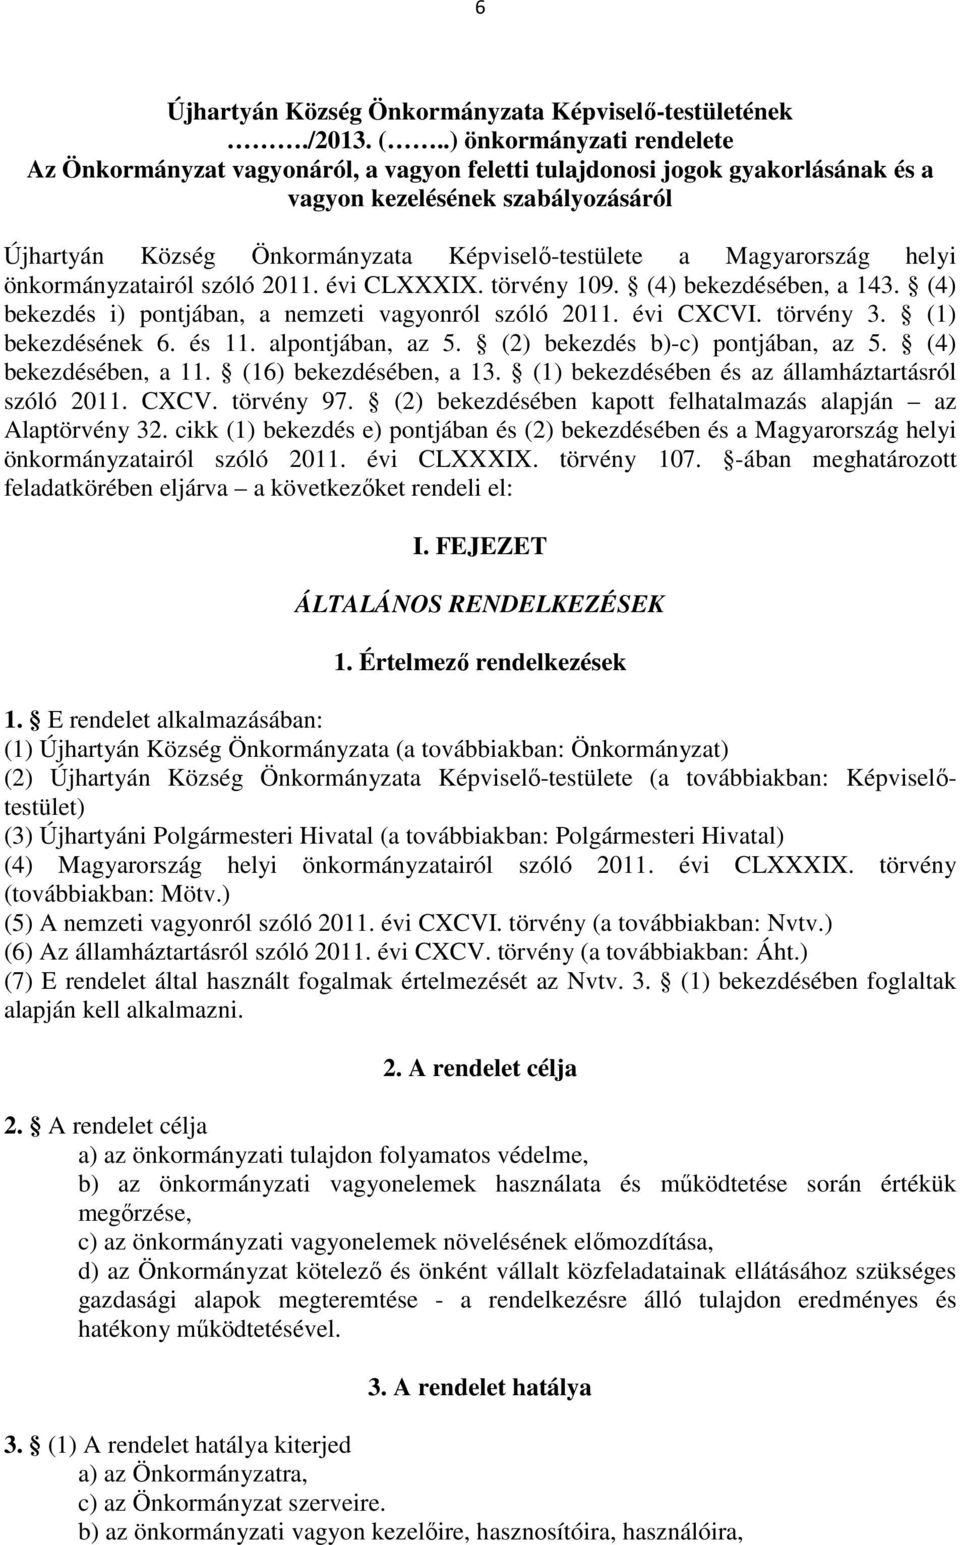 Magyarország helyi önkormányzatairól szóló 2011. évi CLXXXIX. törvény 109. (4) bekezdésében, a 143. (4) bekezdés i) pontjában, a nemzeti vagyonról szóló 2011. évi CXCVI. törvény 3. (1) bekezdésének 6.